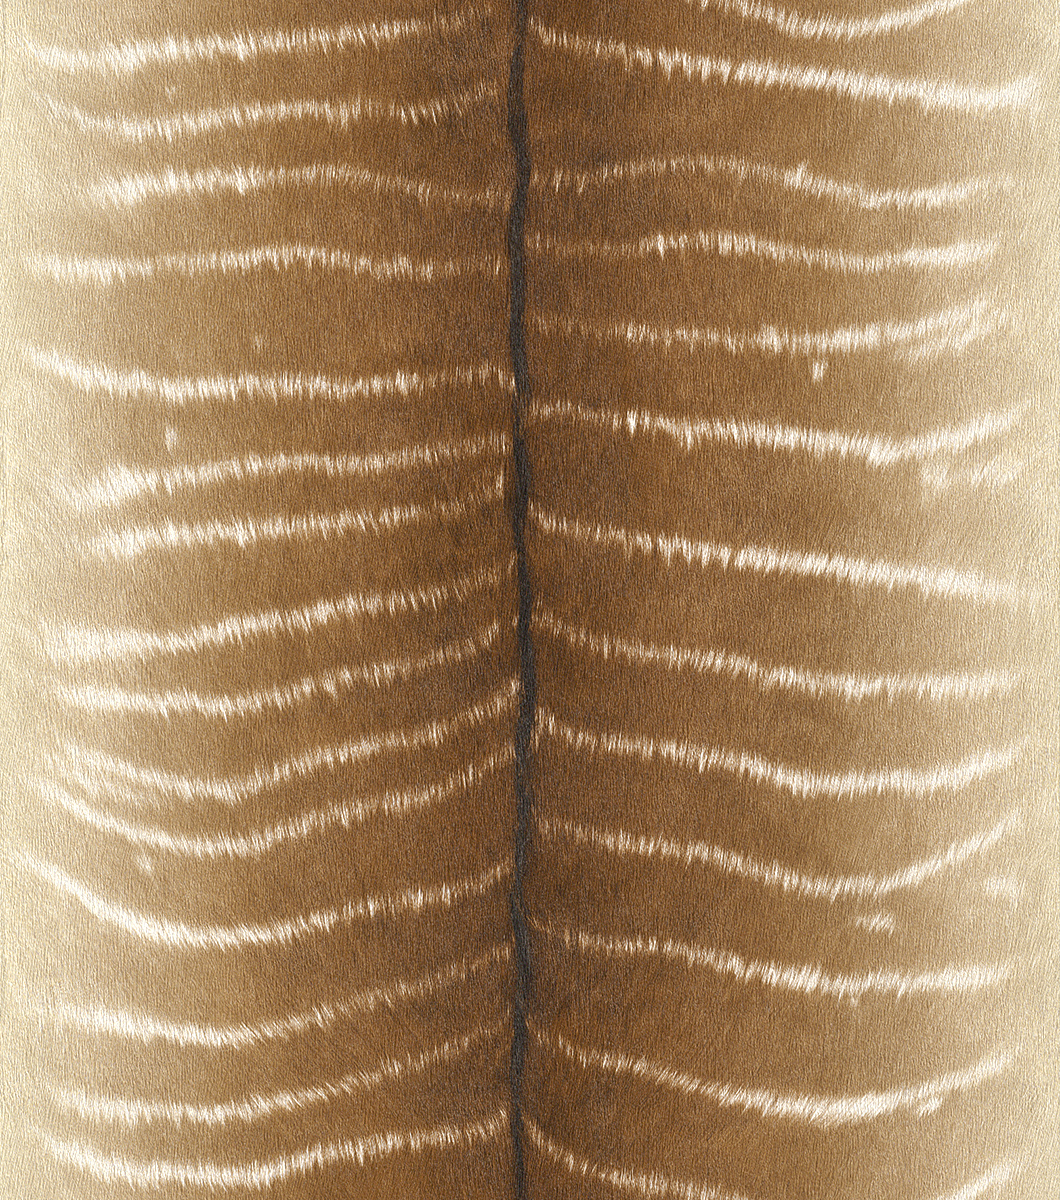 Aranybarna-fehér színű antilop hatású tapéta